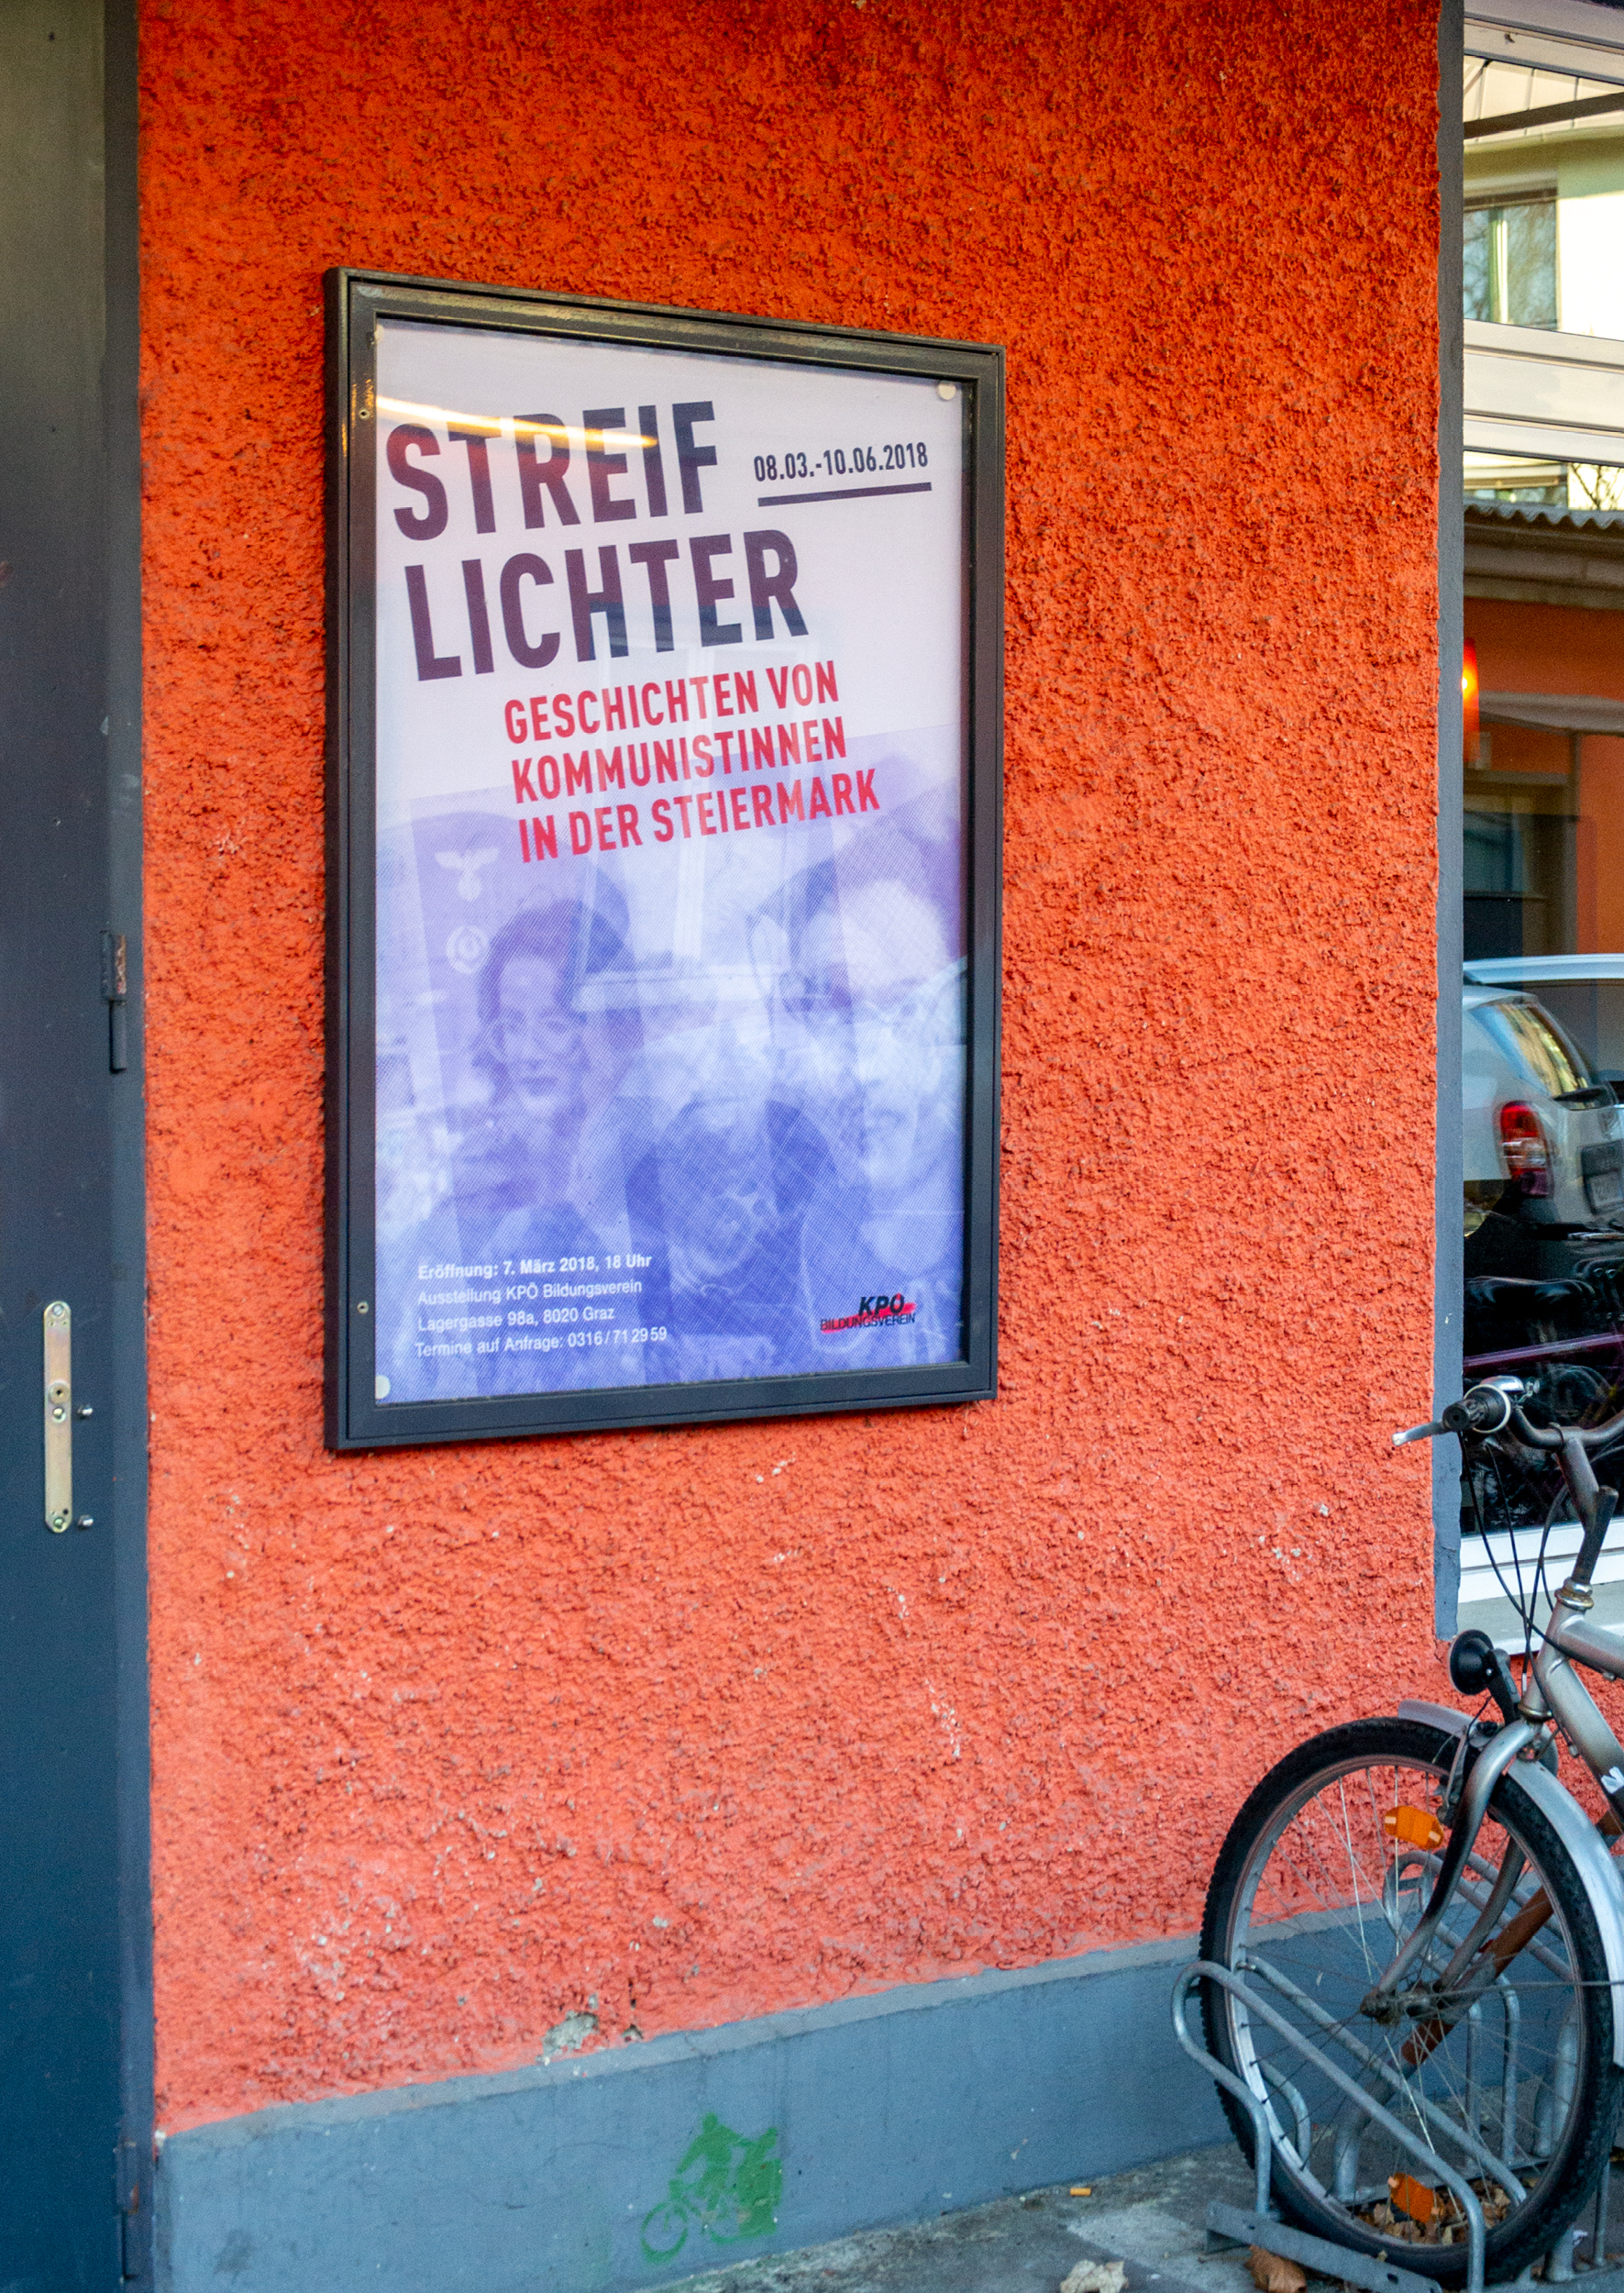 Ausstellung „Streiflichter. Geschichten von Kommunistinnen in der Steiermark“: Austellungsgrafik von look! design für den KPÖ Bildungsverein Graz